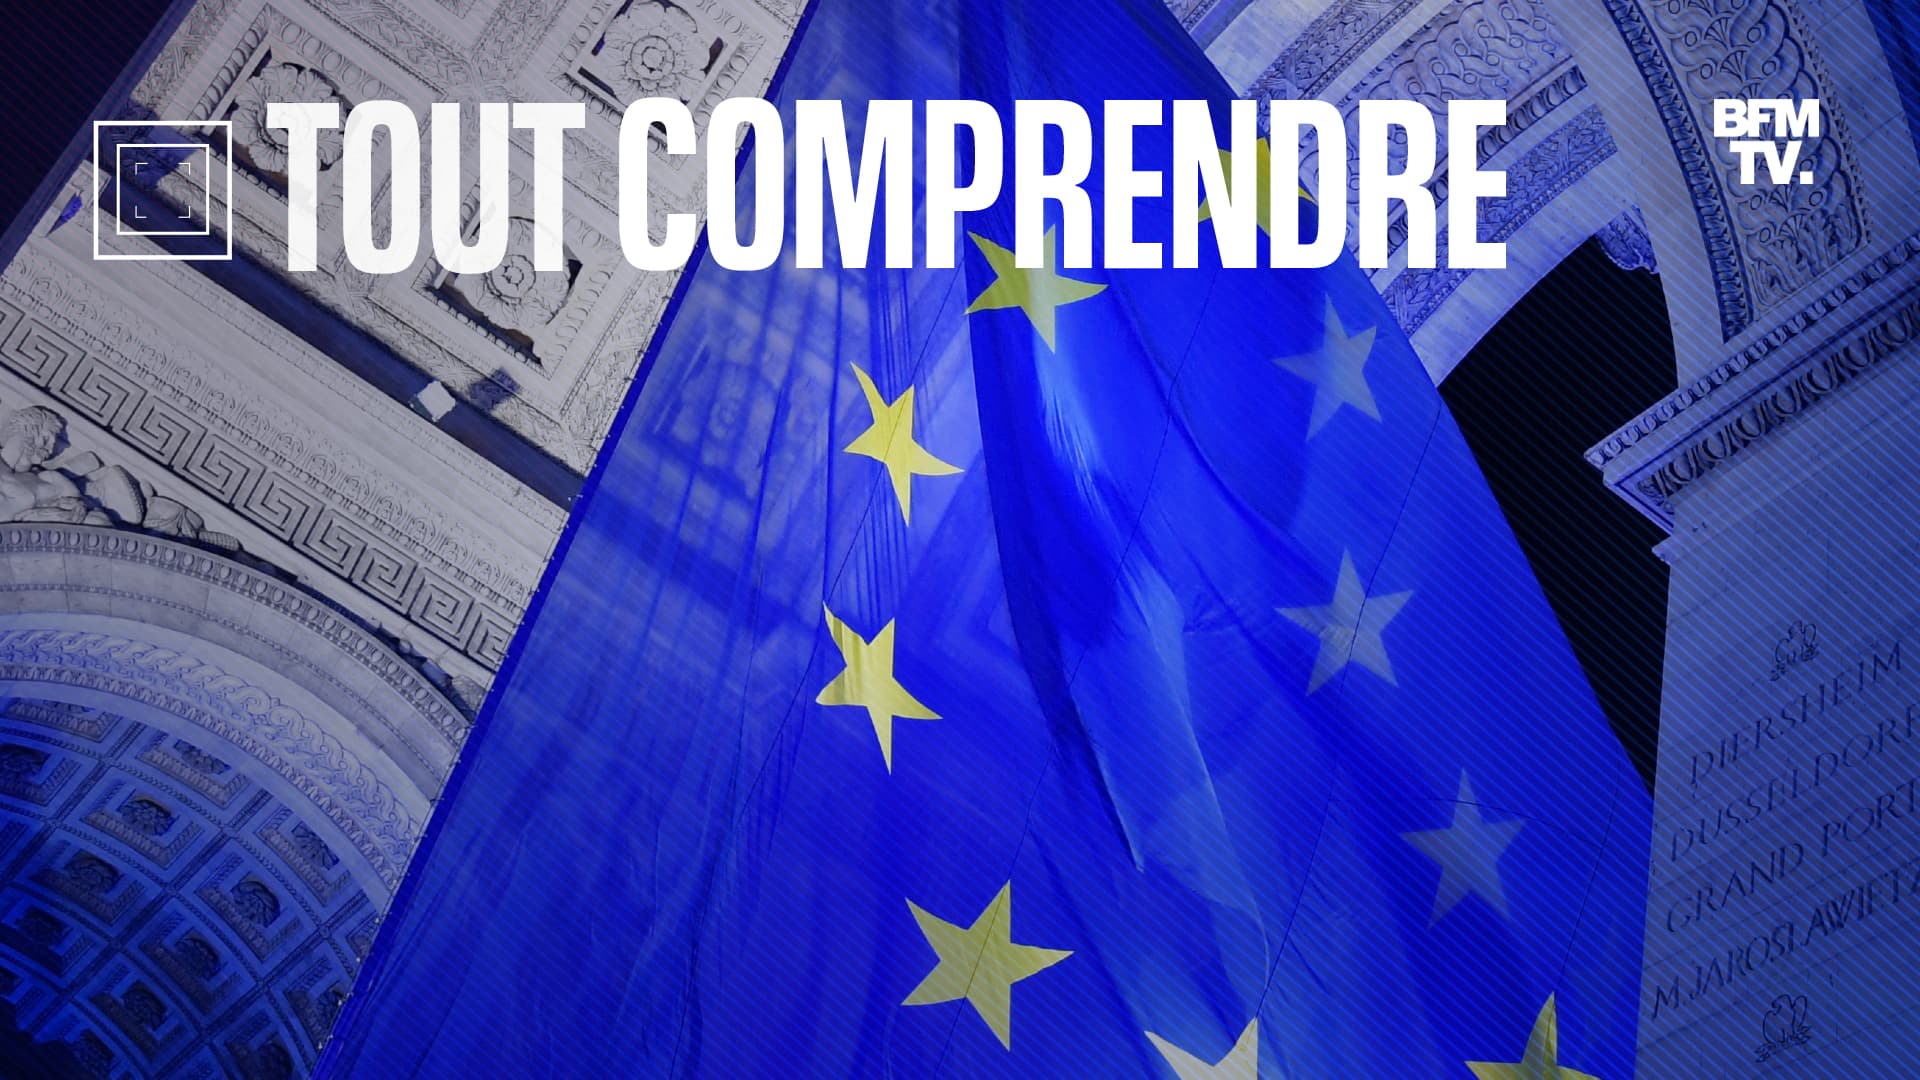 Le drapeau européen sous l'Arc de triomphe, une « initiative symbolique et  temporaire », a été retiré